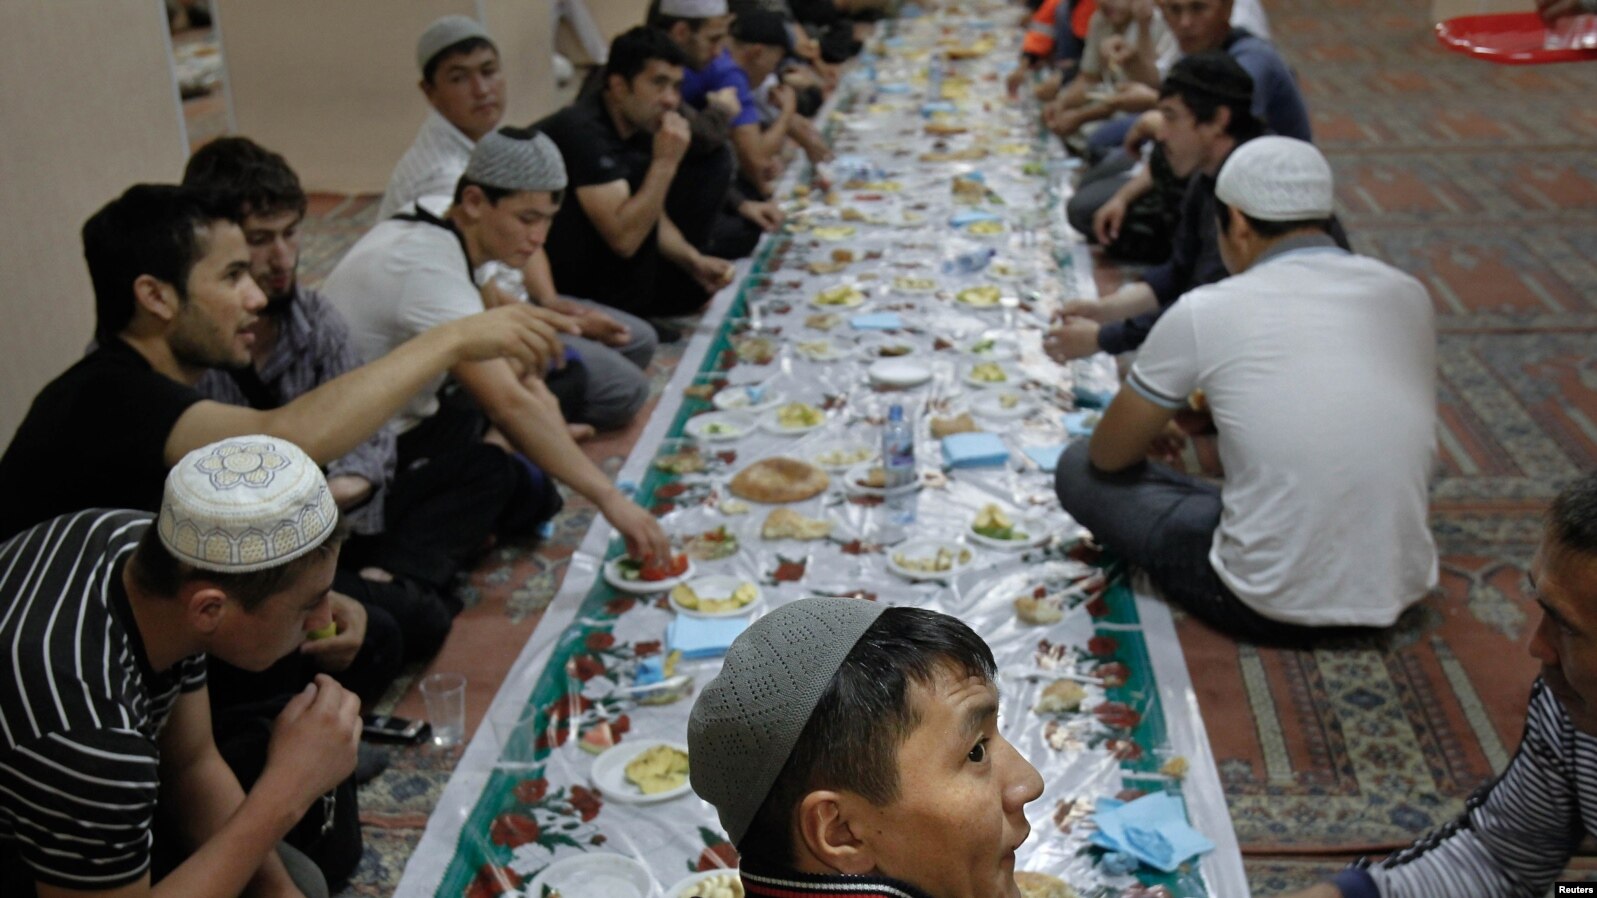 Узбекские мусульманские. Ифтар в мечети. Таджики мусульмане. Мигранты в мечети. Еда в мечети.